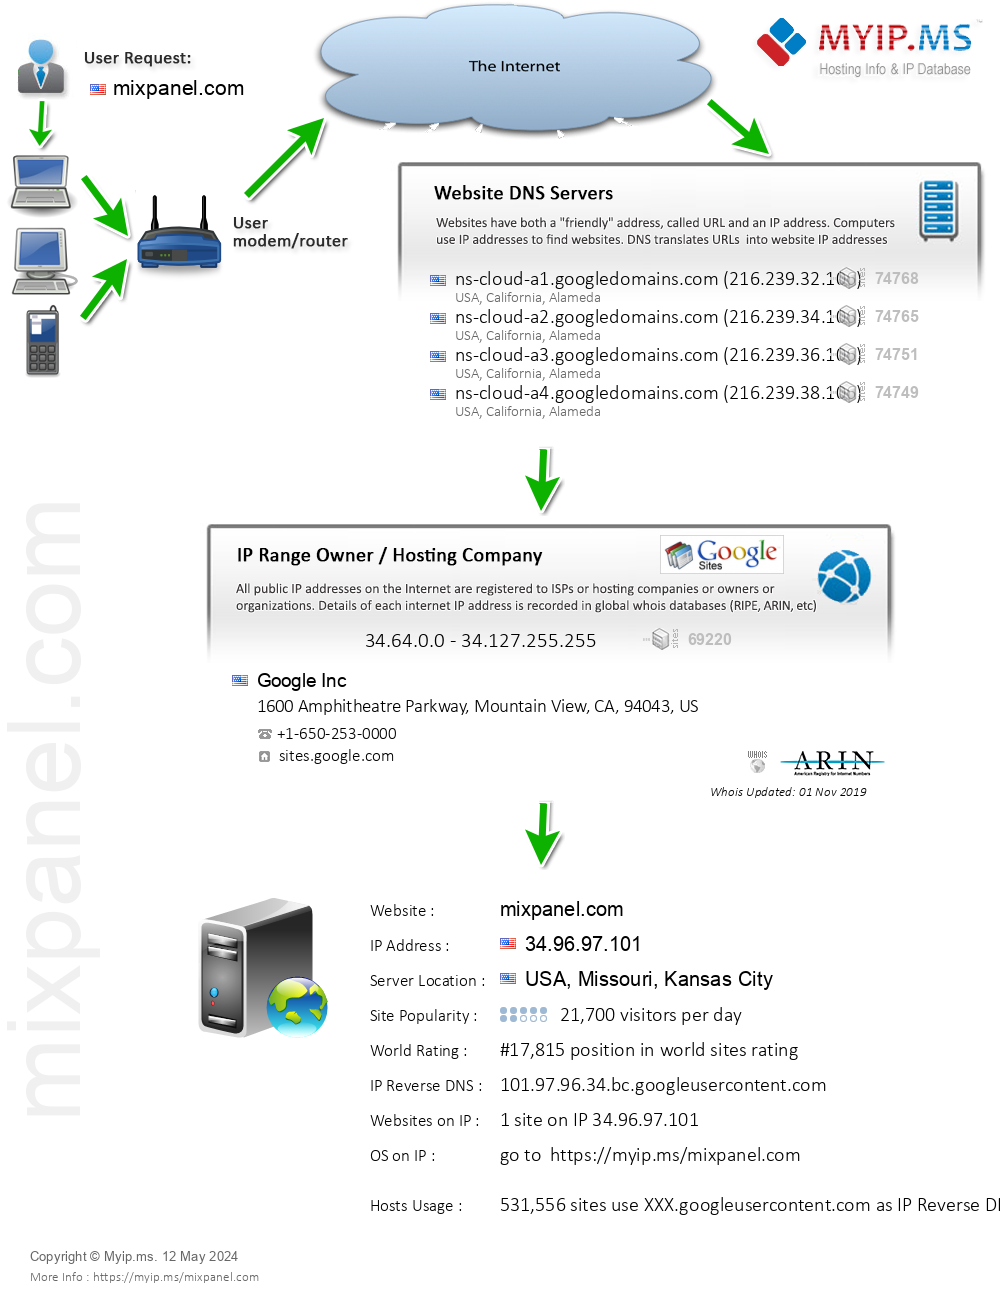 Mixpanel.com - Website Hosting Visual IP Diagram